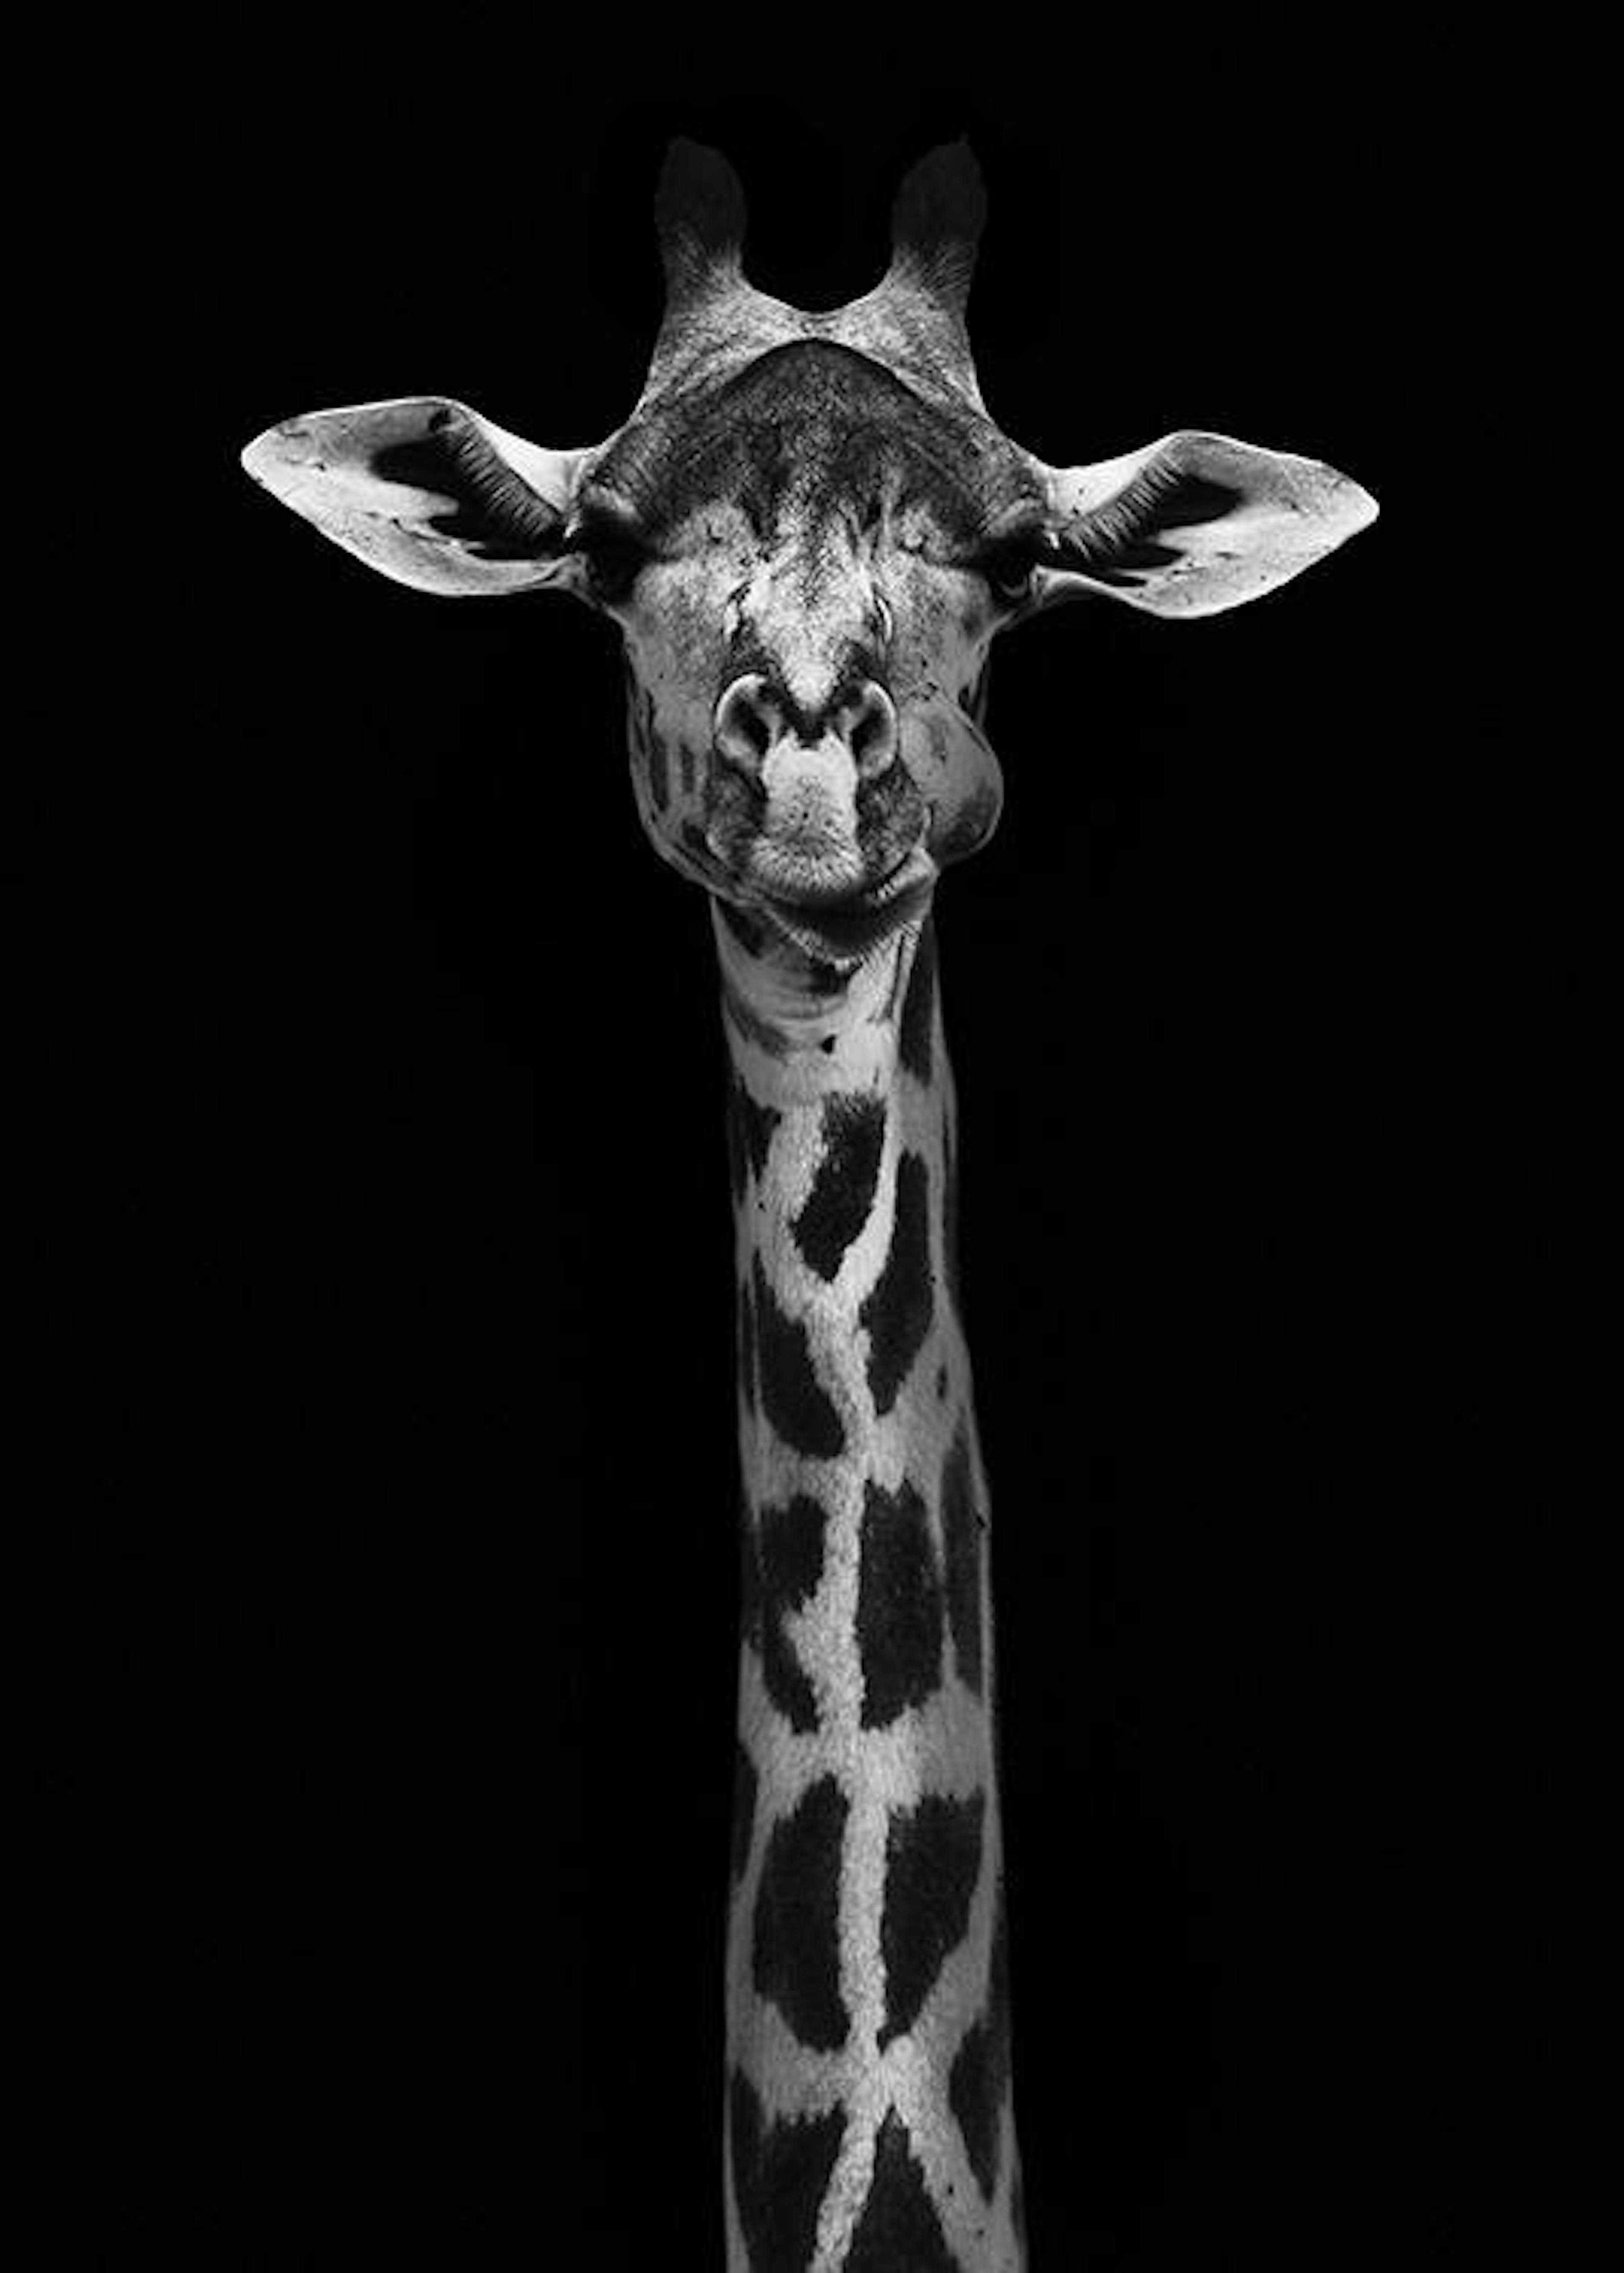 Giraffe on Black Poster 0